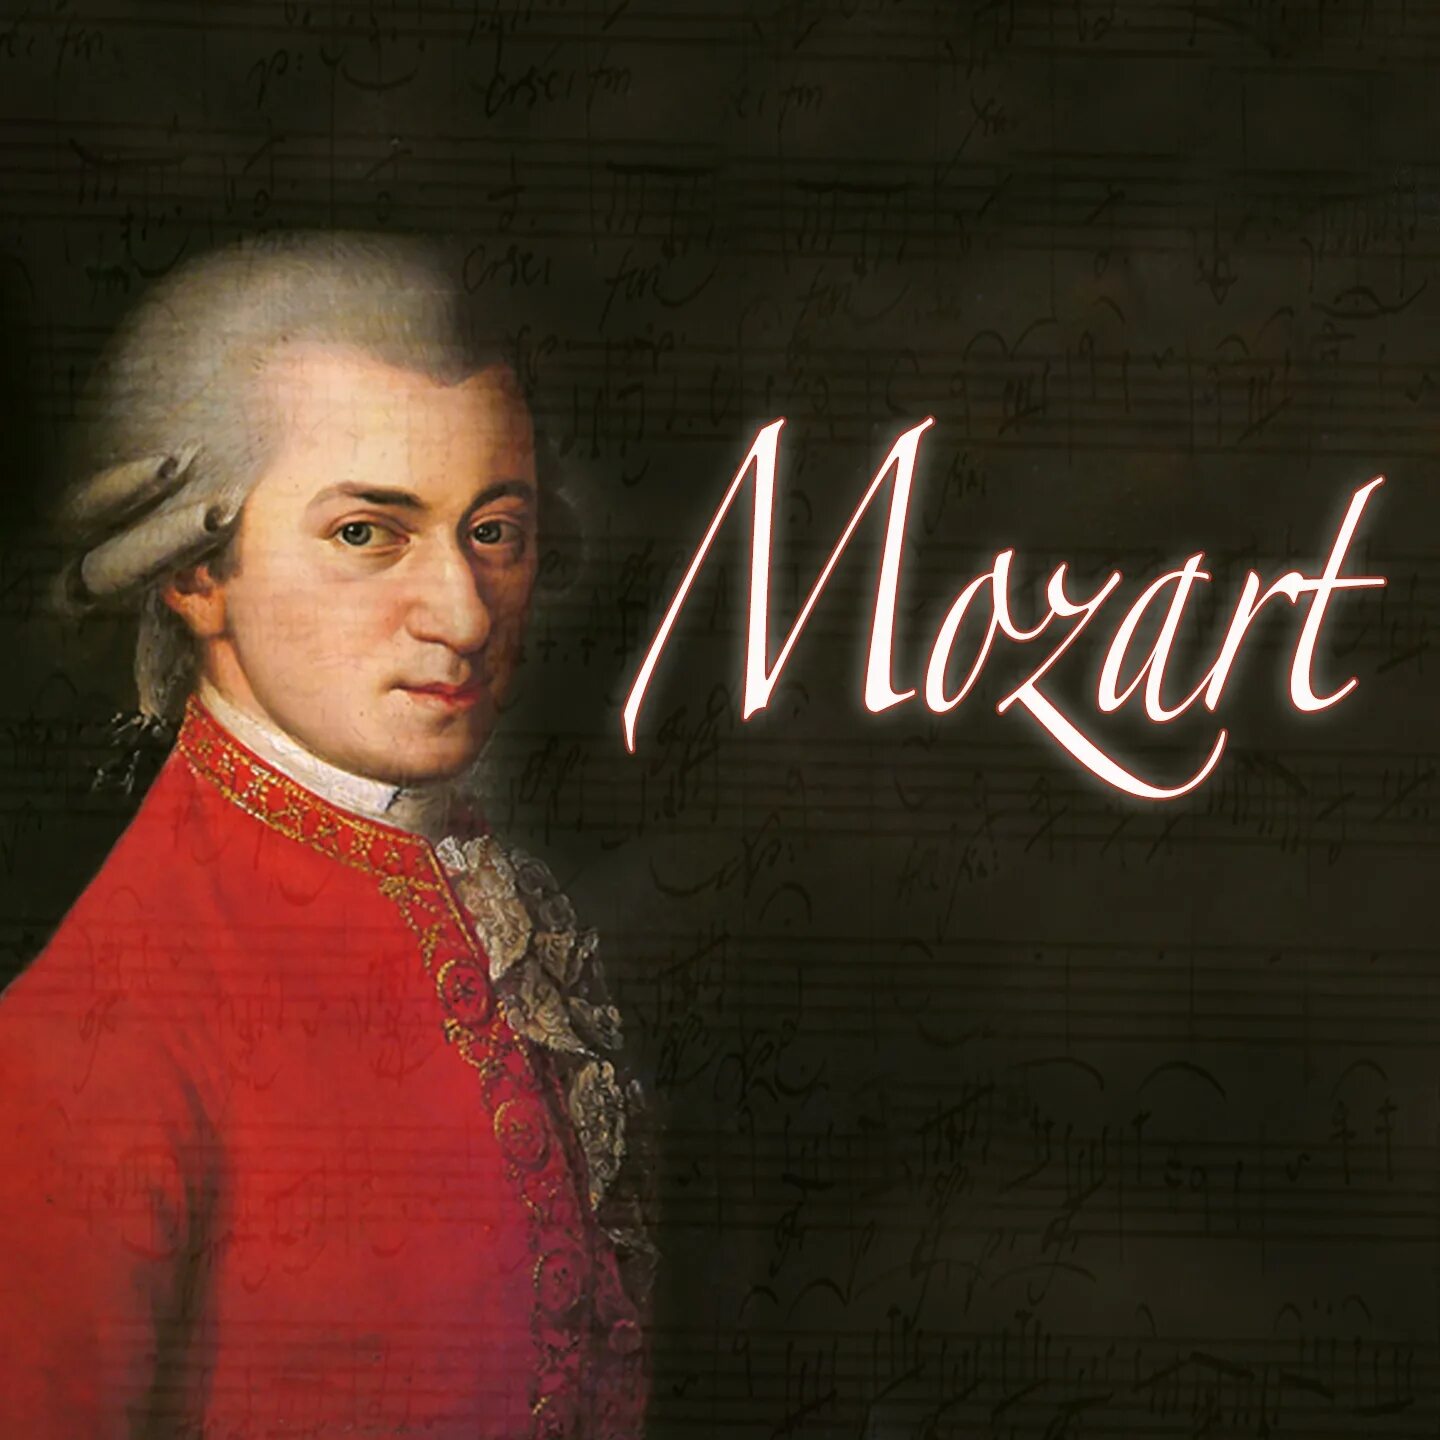 Моцарт портрет композитора.